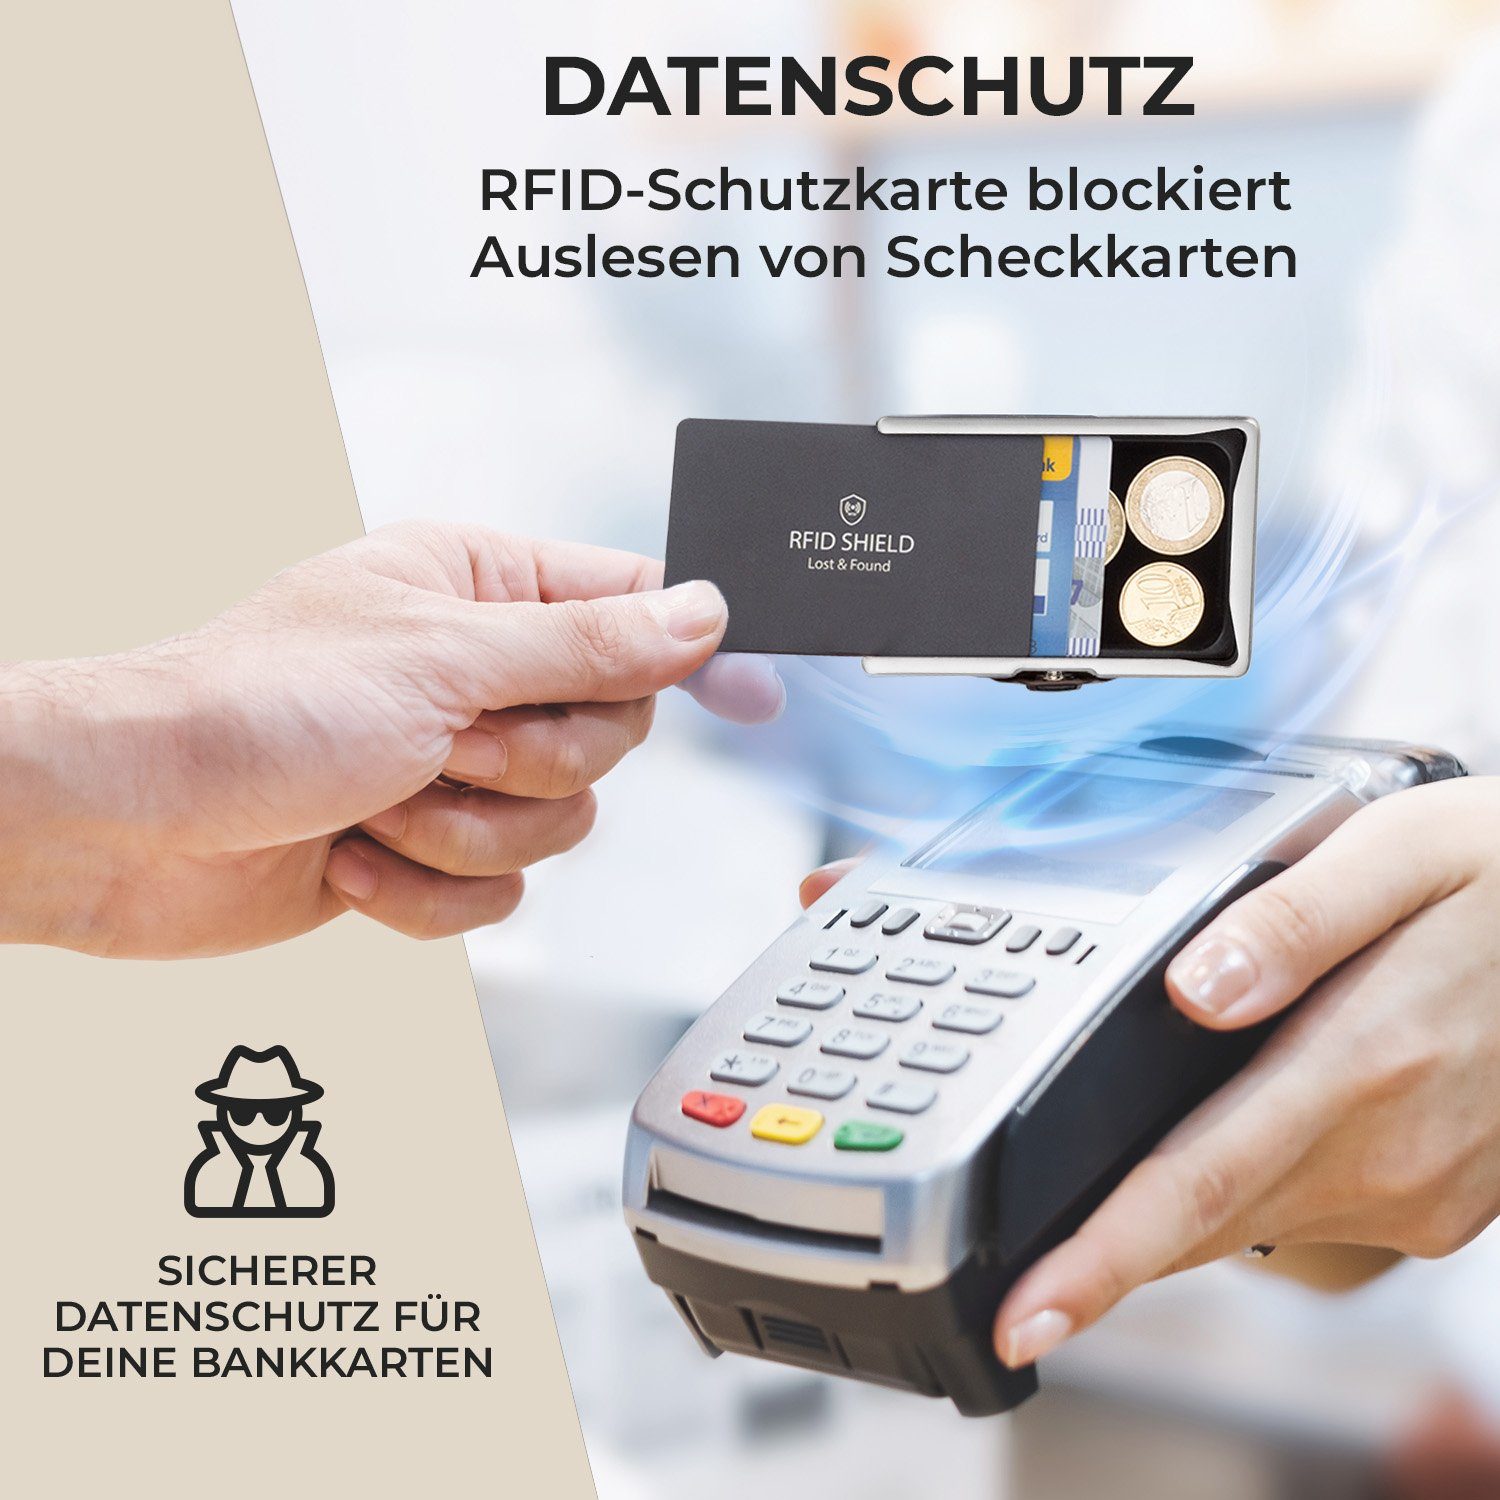 Wallet Slimpuro RFID-Schutz Geldscheine Moosgrün Damen Bankkarten Münzen Geldbörse Portemonnaie Herren ZNAP (Set),